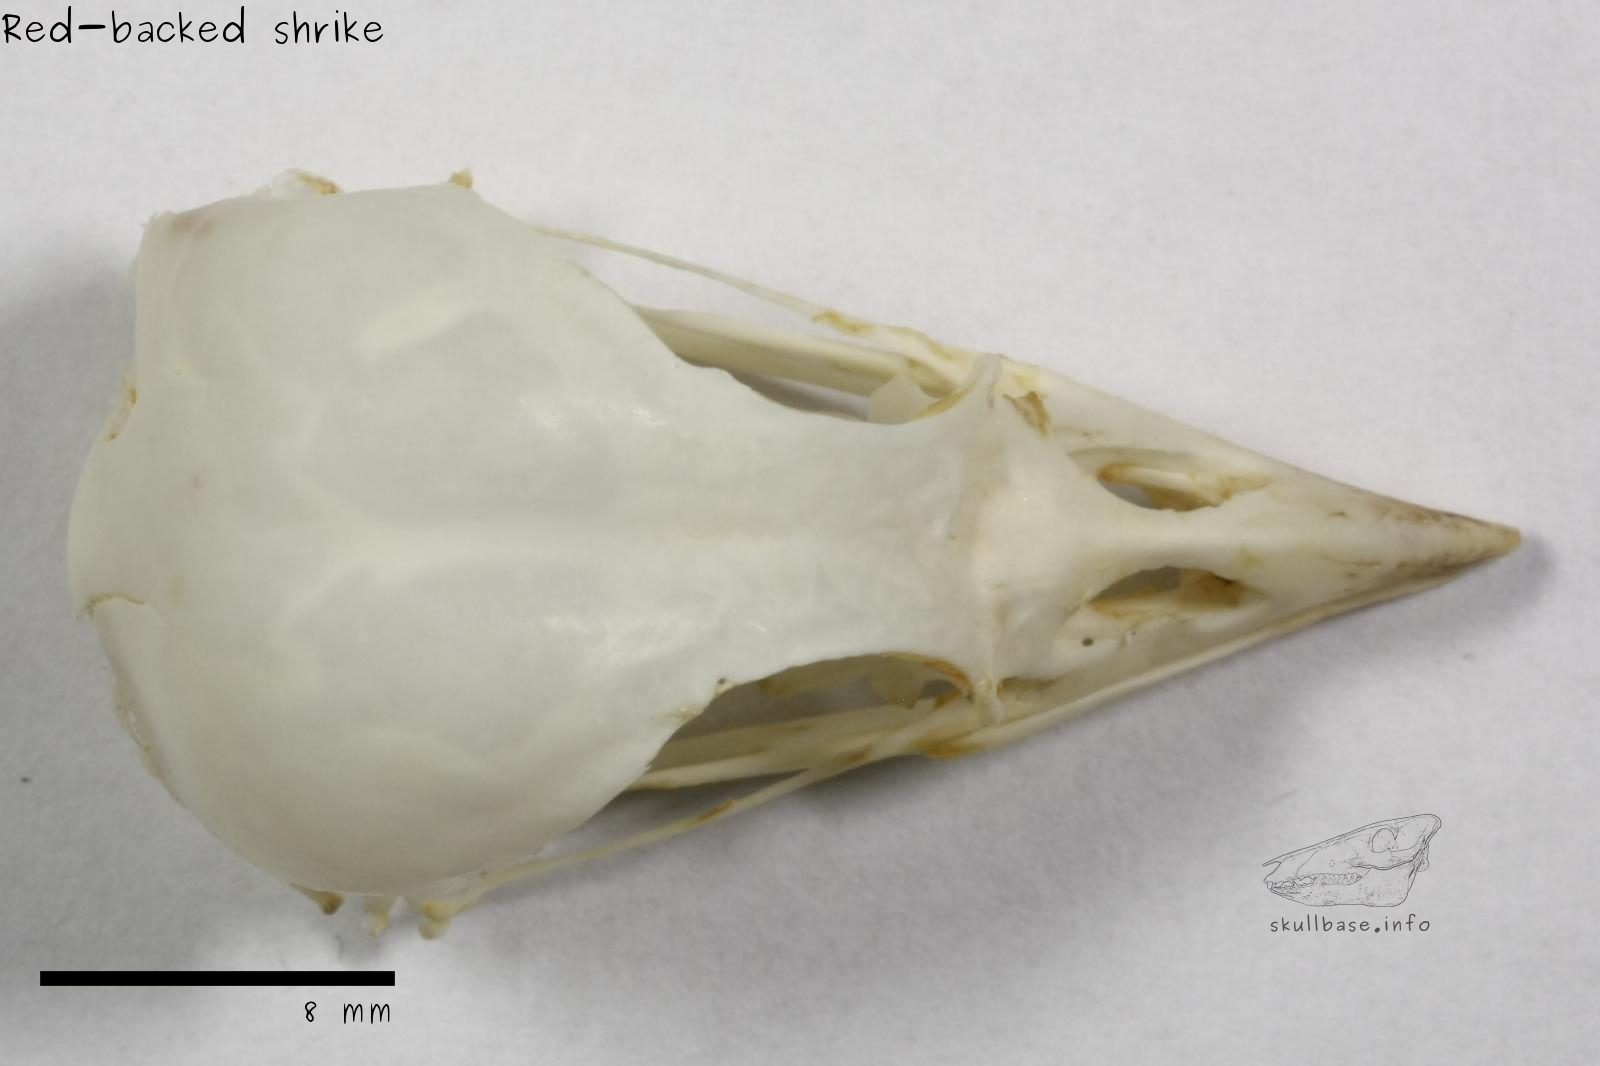 Red-backed shrike (Lanius collurio) skull dorsal view